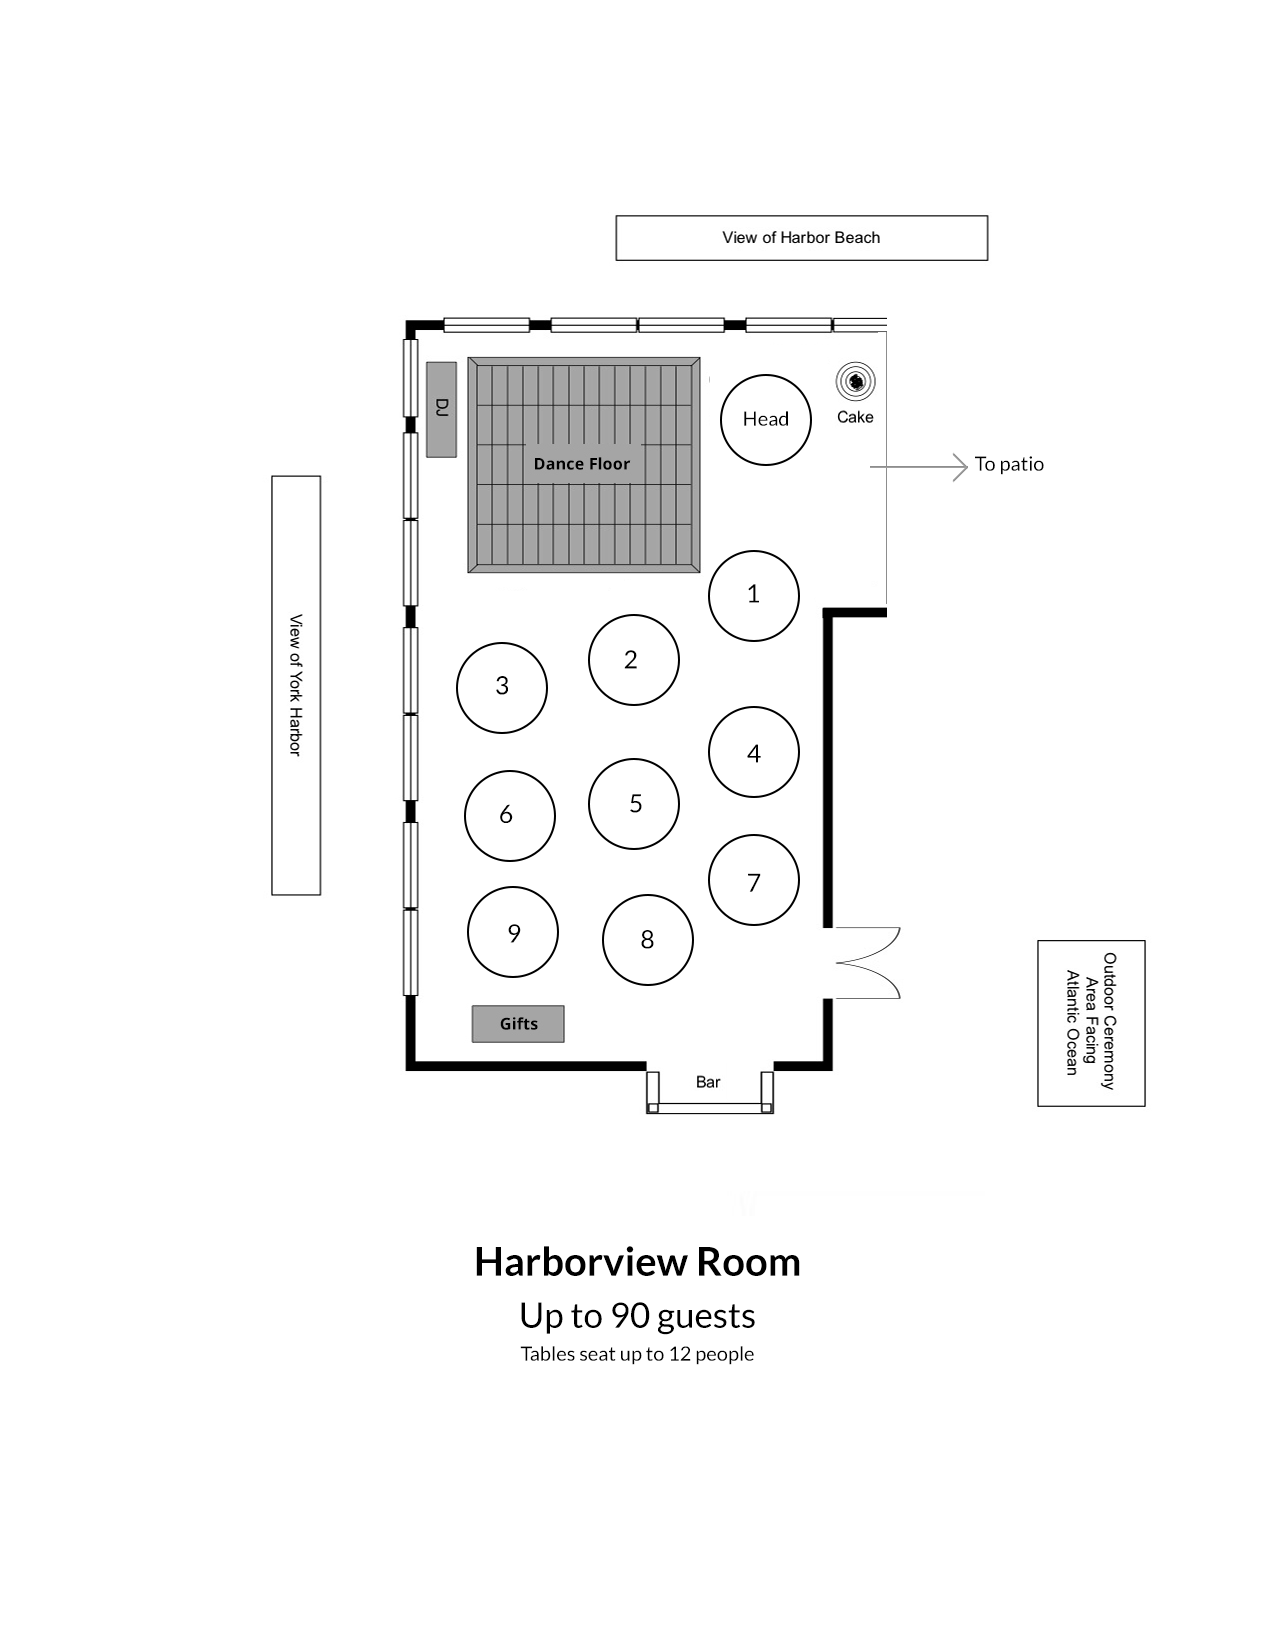 Harborview Room Wedding Floor Plan in York, Maine